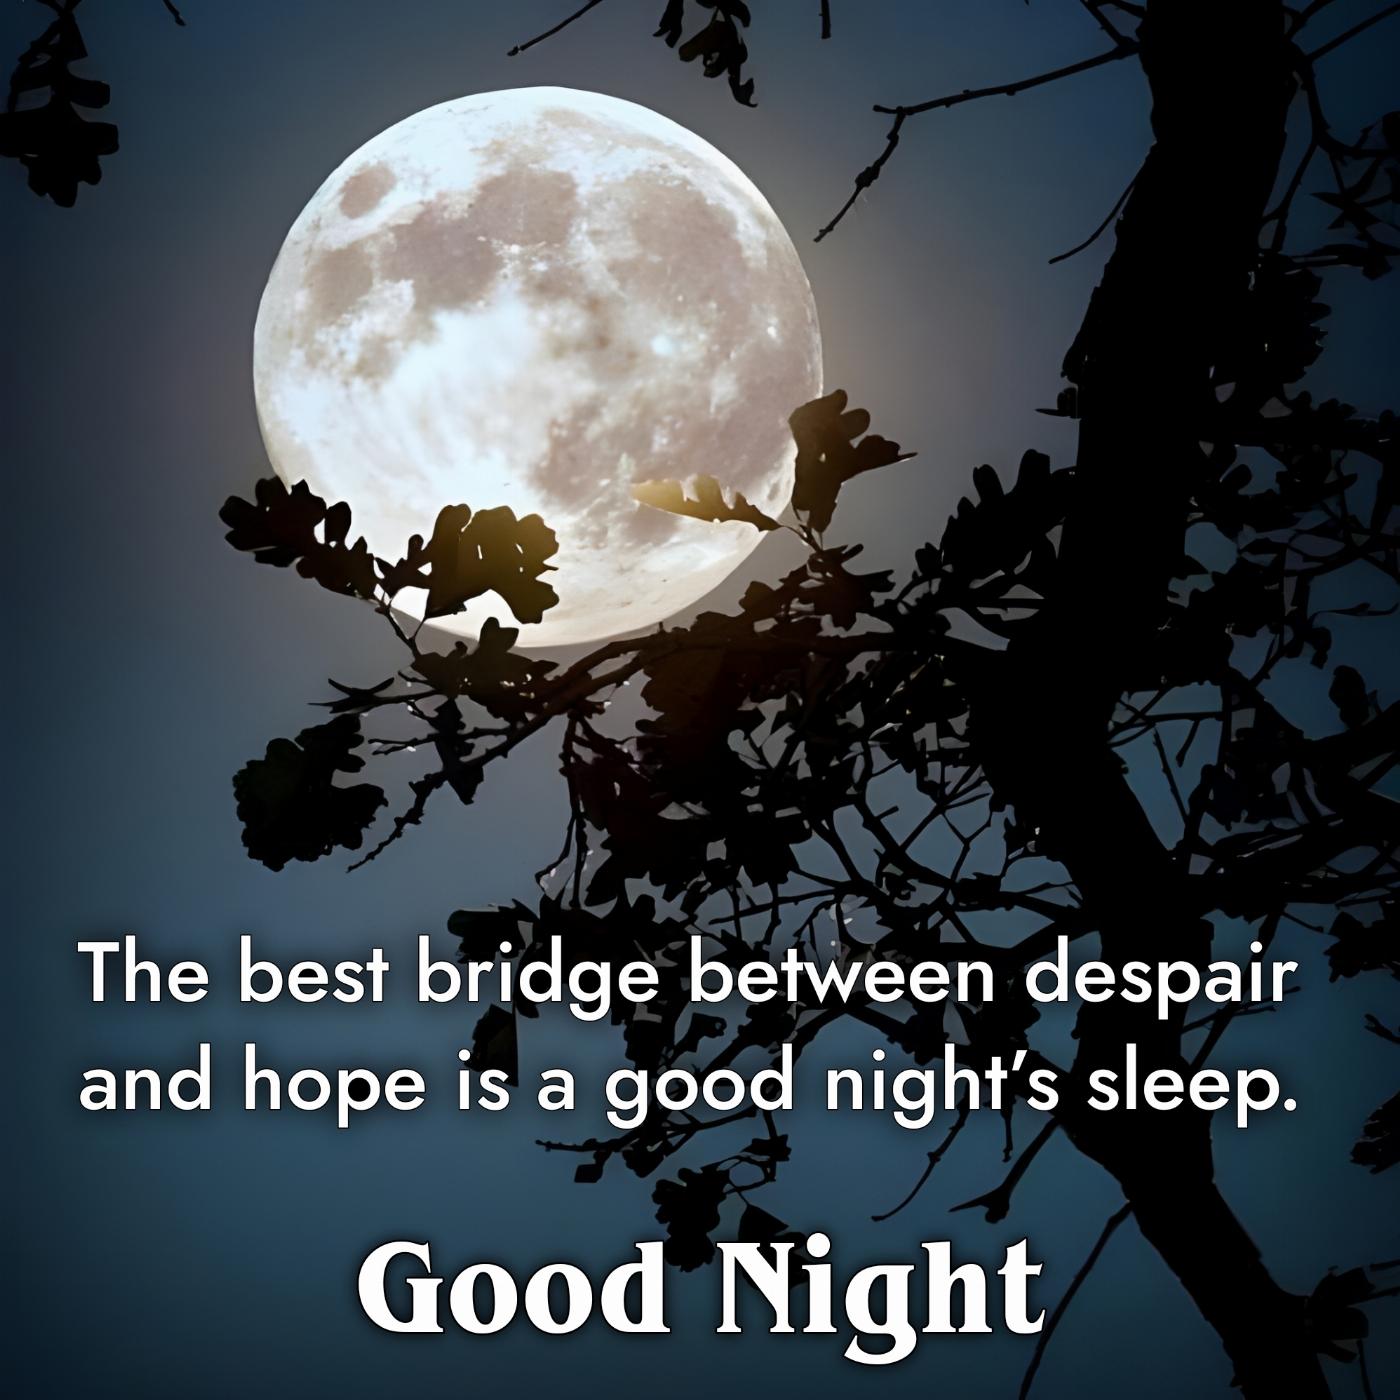 The best bridge between despair and hope